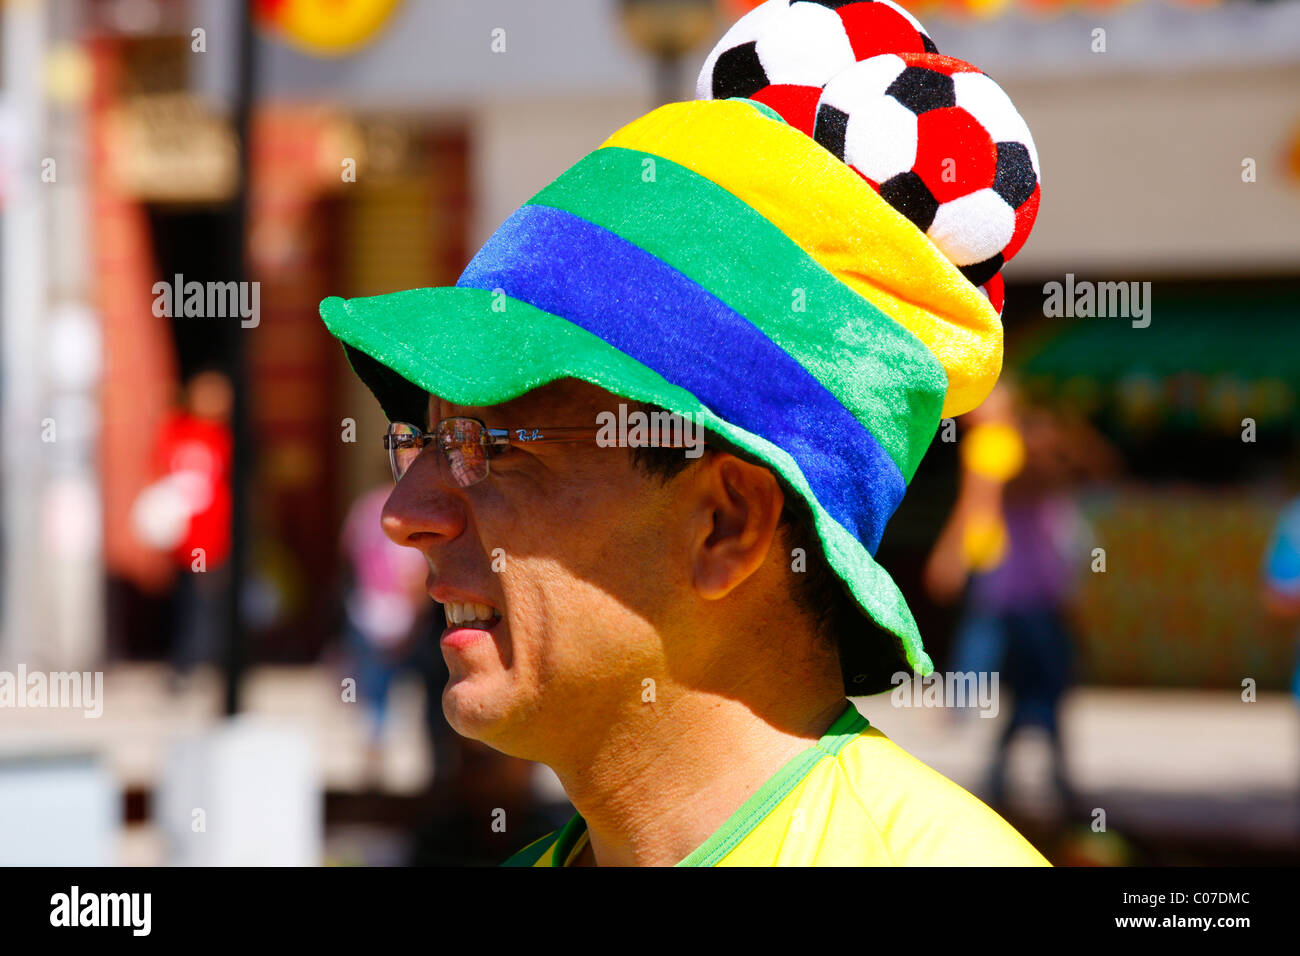 Soccer fan at Praça do Ferreira, Fortaleza, state of Ceará, Brazil, South America Stock Photo